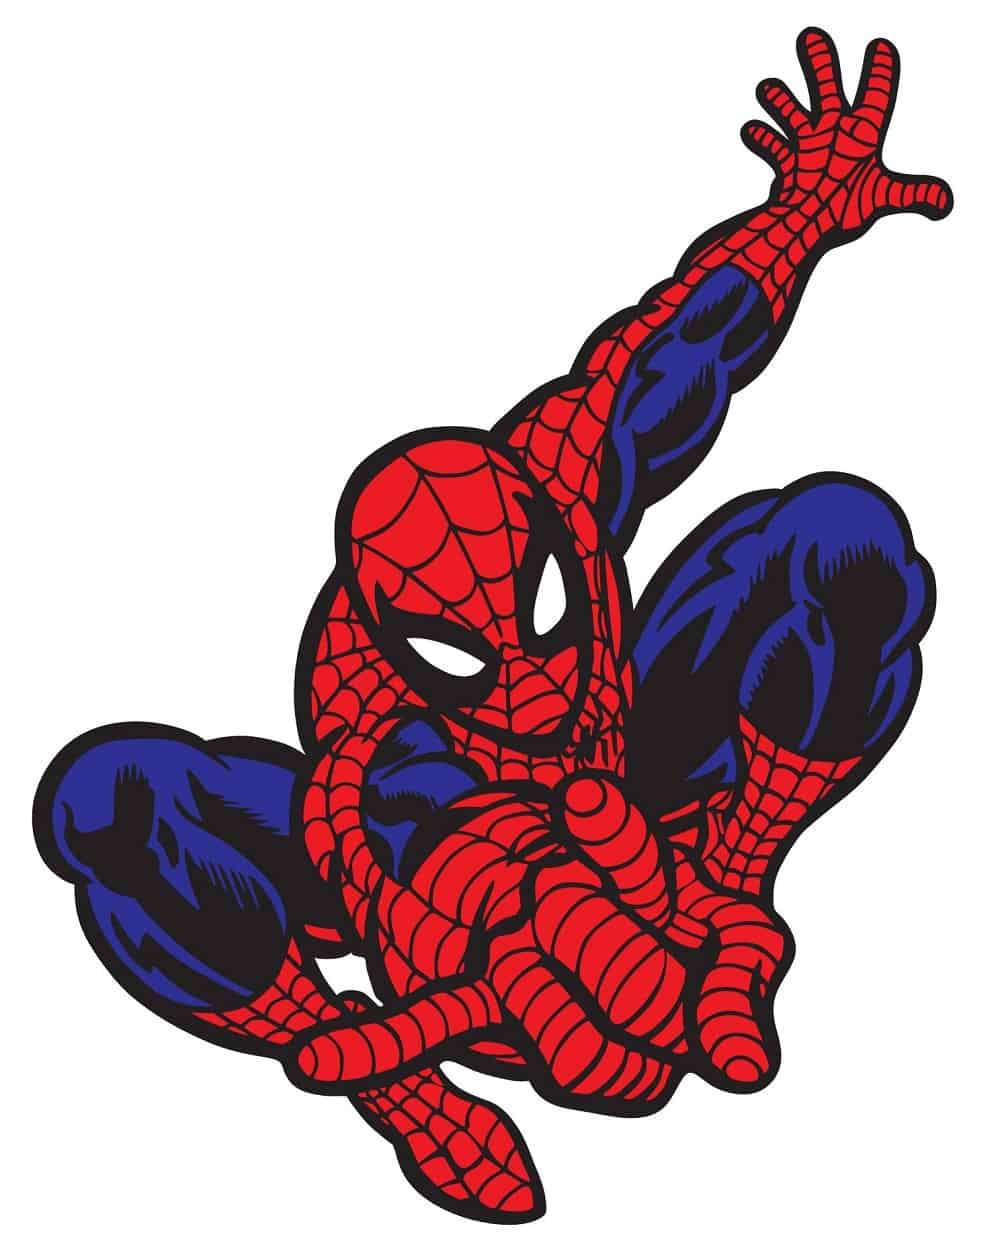 Spider man logo3